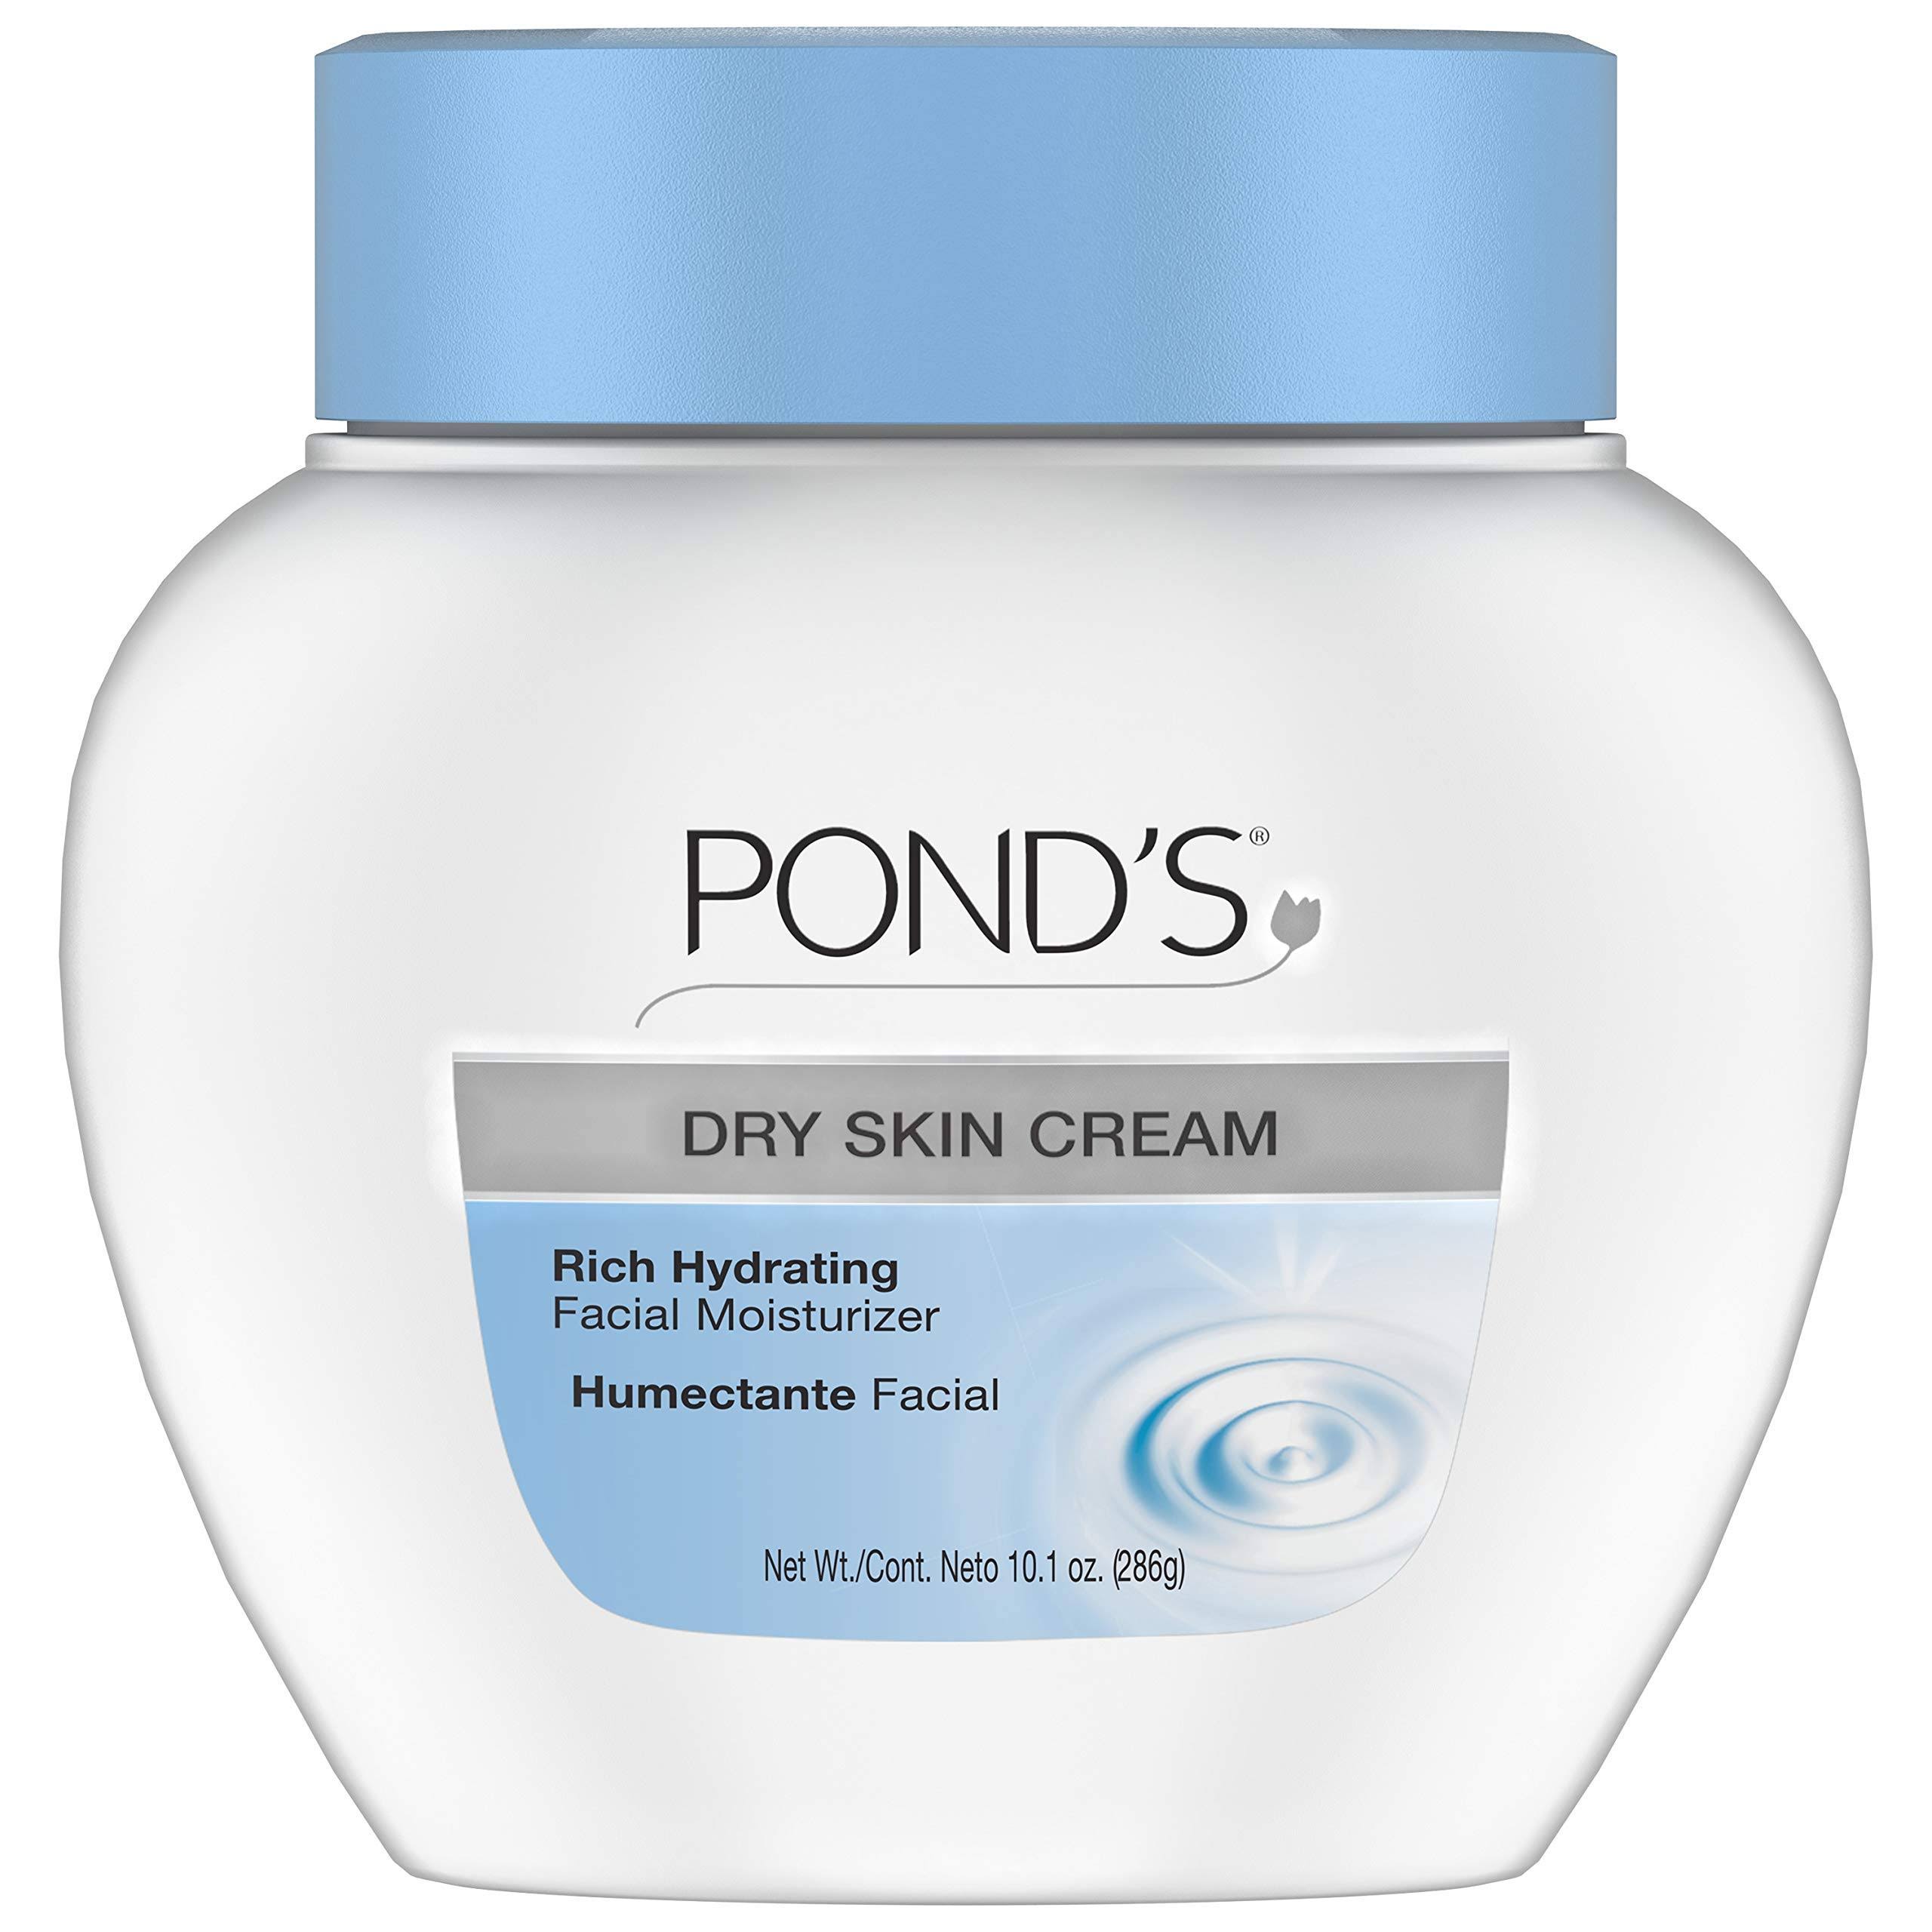 Pond's Dry Skin Cream Facial Moisturizer - 10.1oz